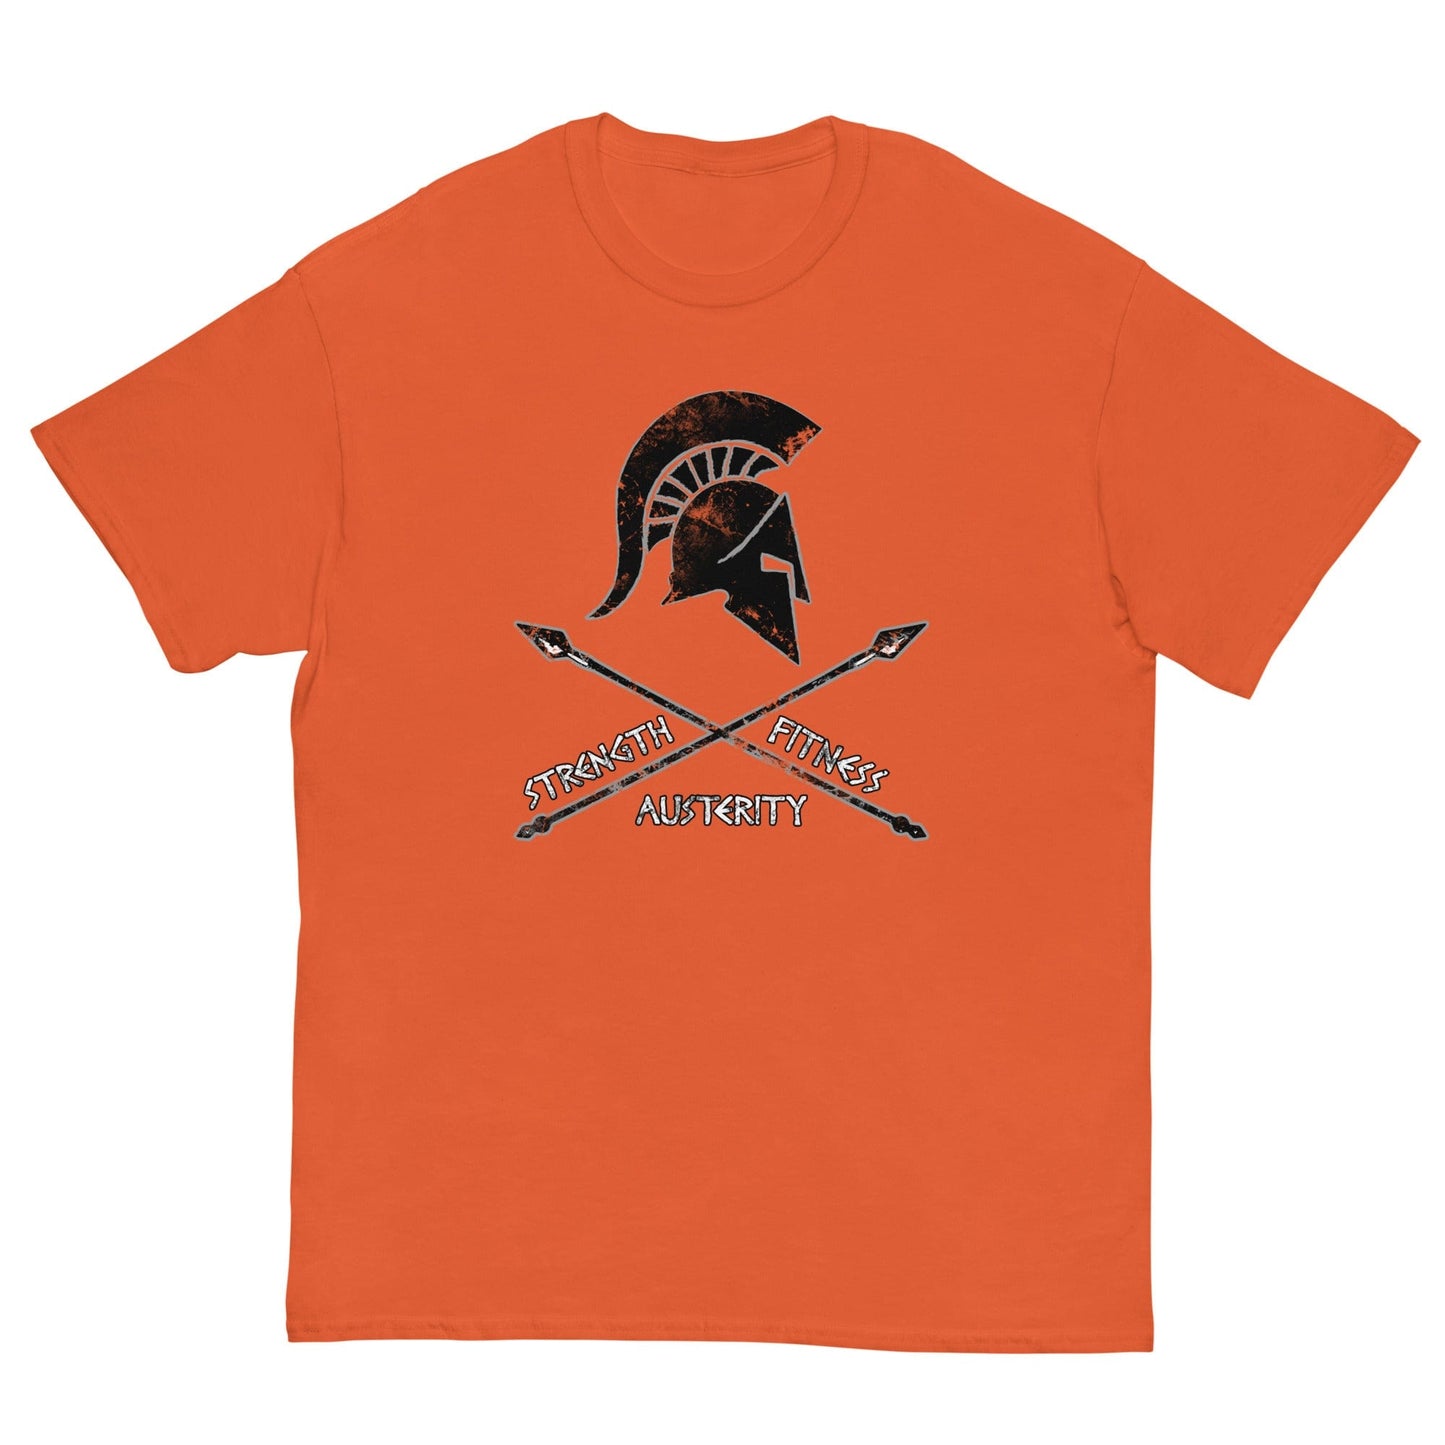 Spartan Warrior Oath T-shirt Orange / S